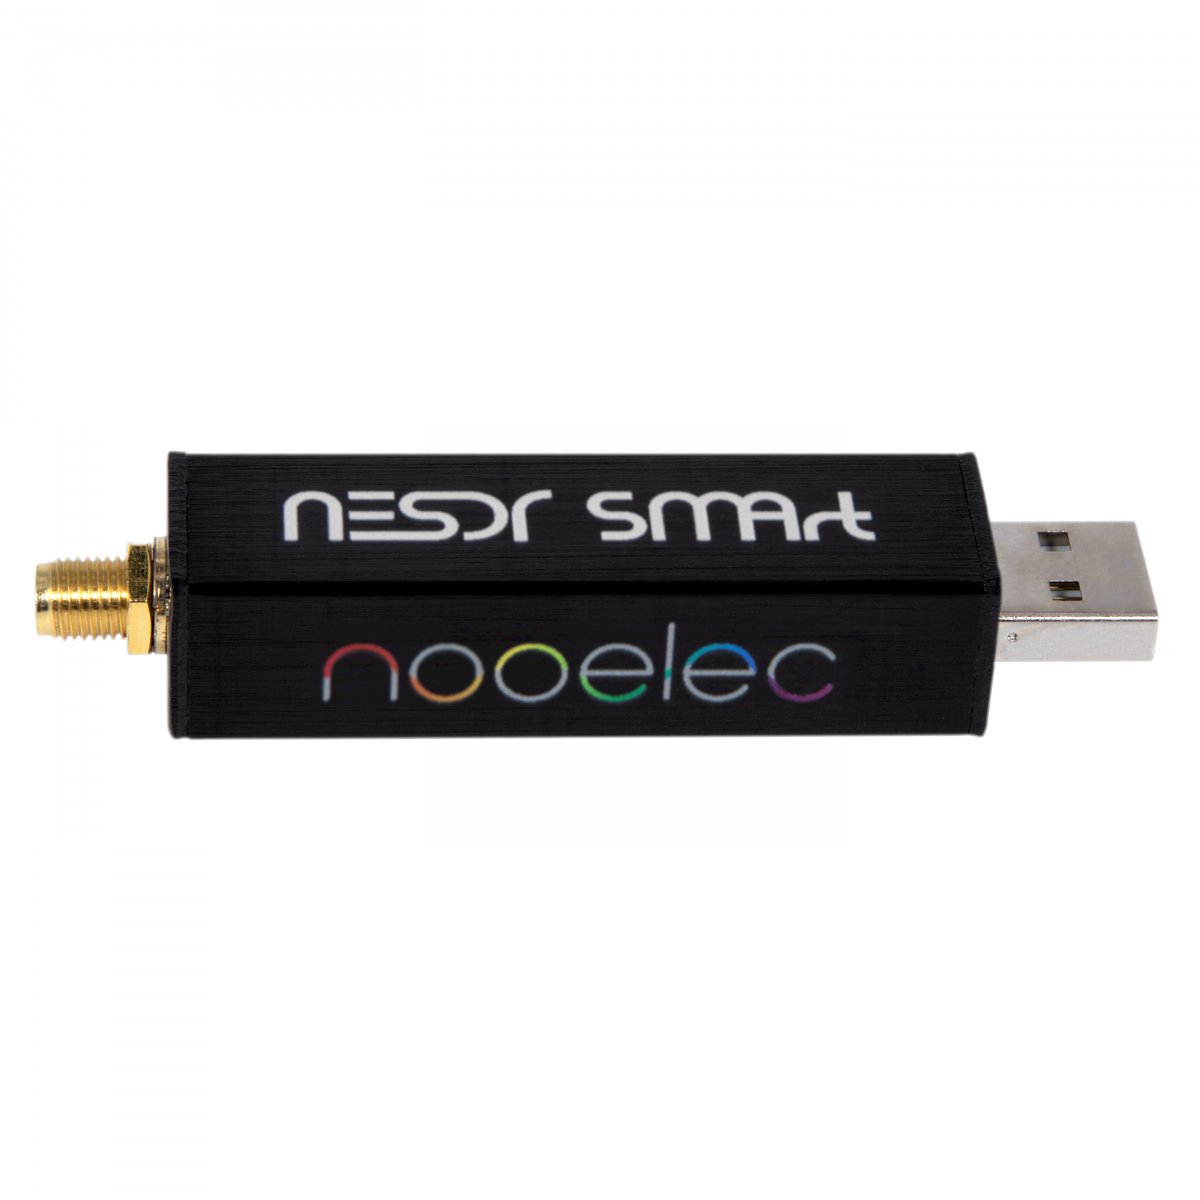 Nooelec Nooelec NESDR SMArt v5 SDR HF/VHF/UHF (100kHz-1.75GHz) RTL-SDR.  RTL2832U  R820T2-Based Software Defined Radio SDR Receivers Software  Defined Radio